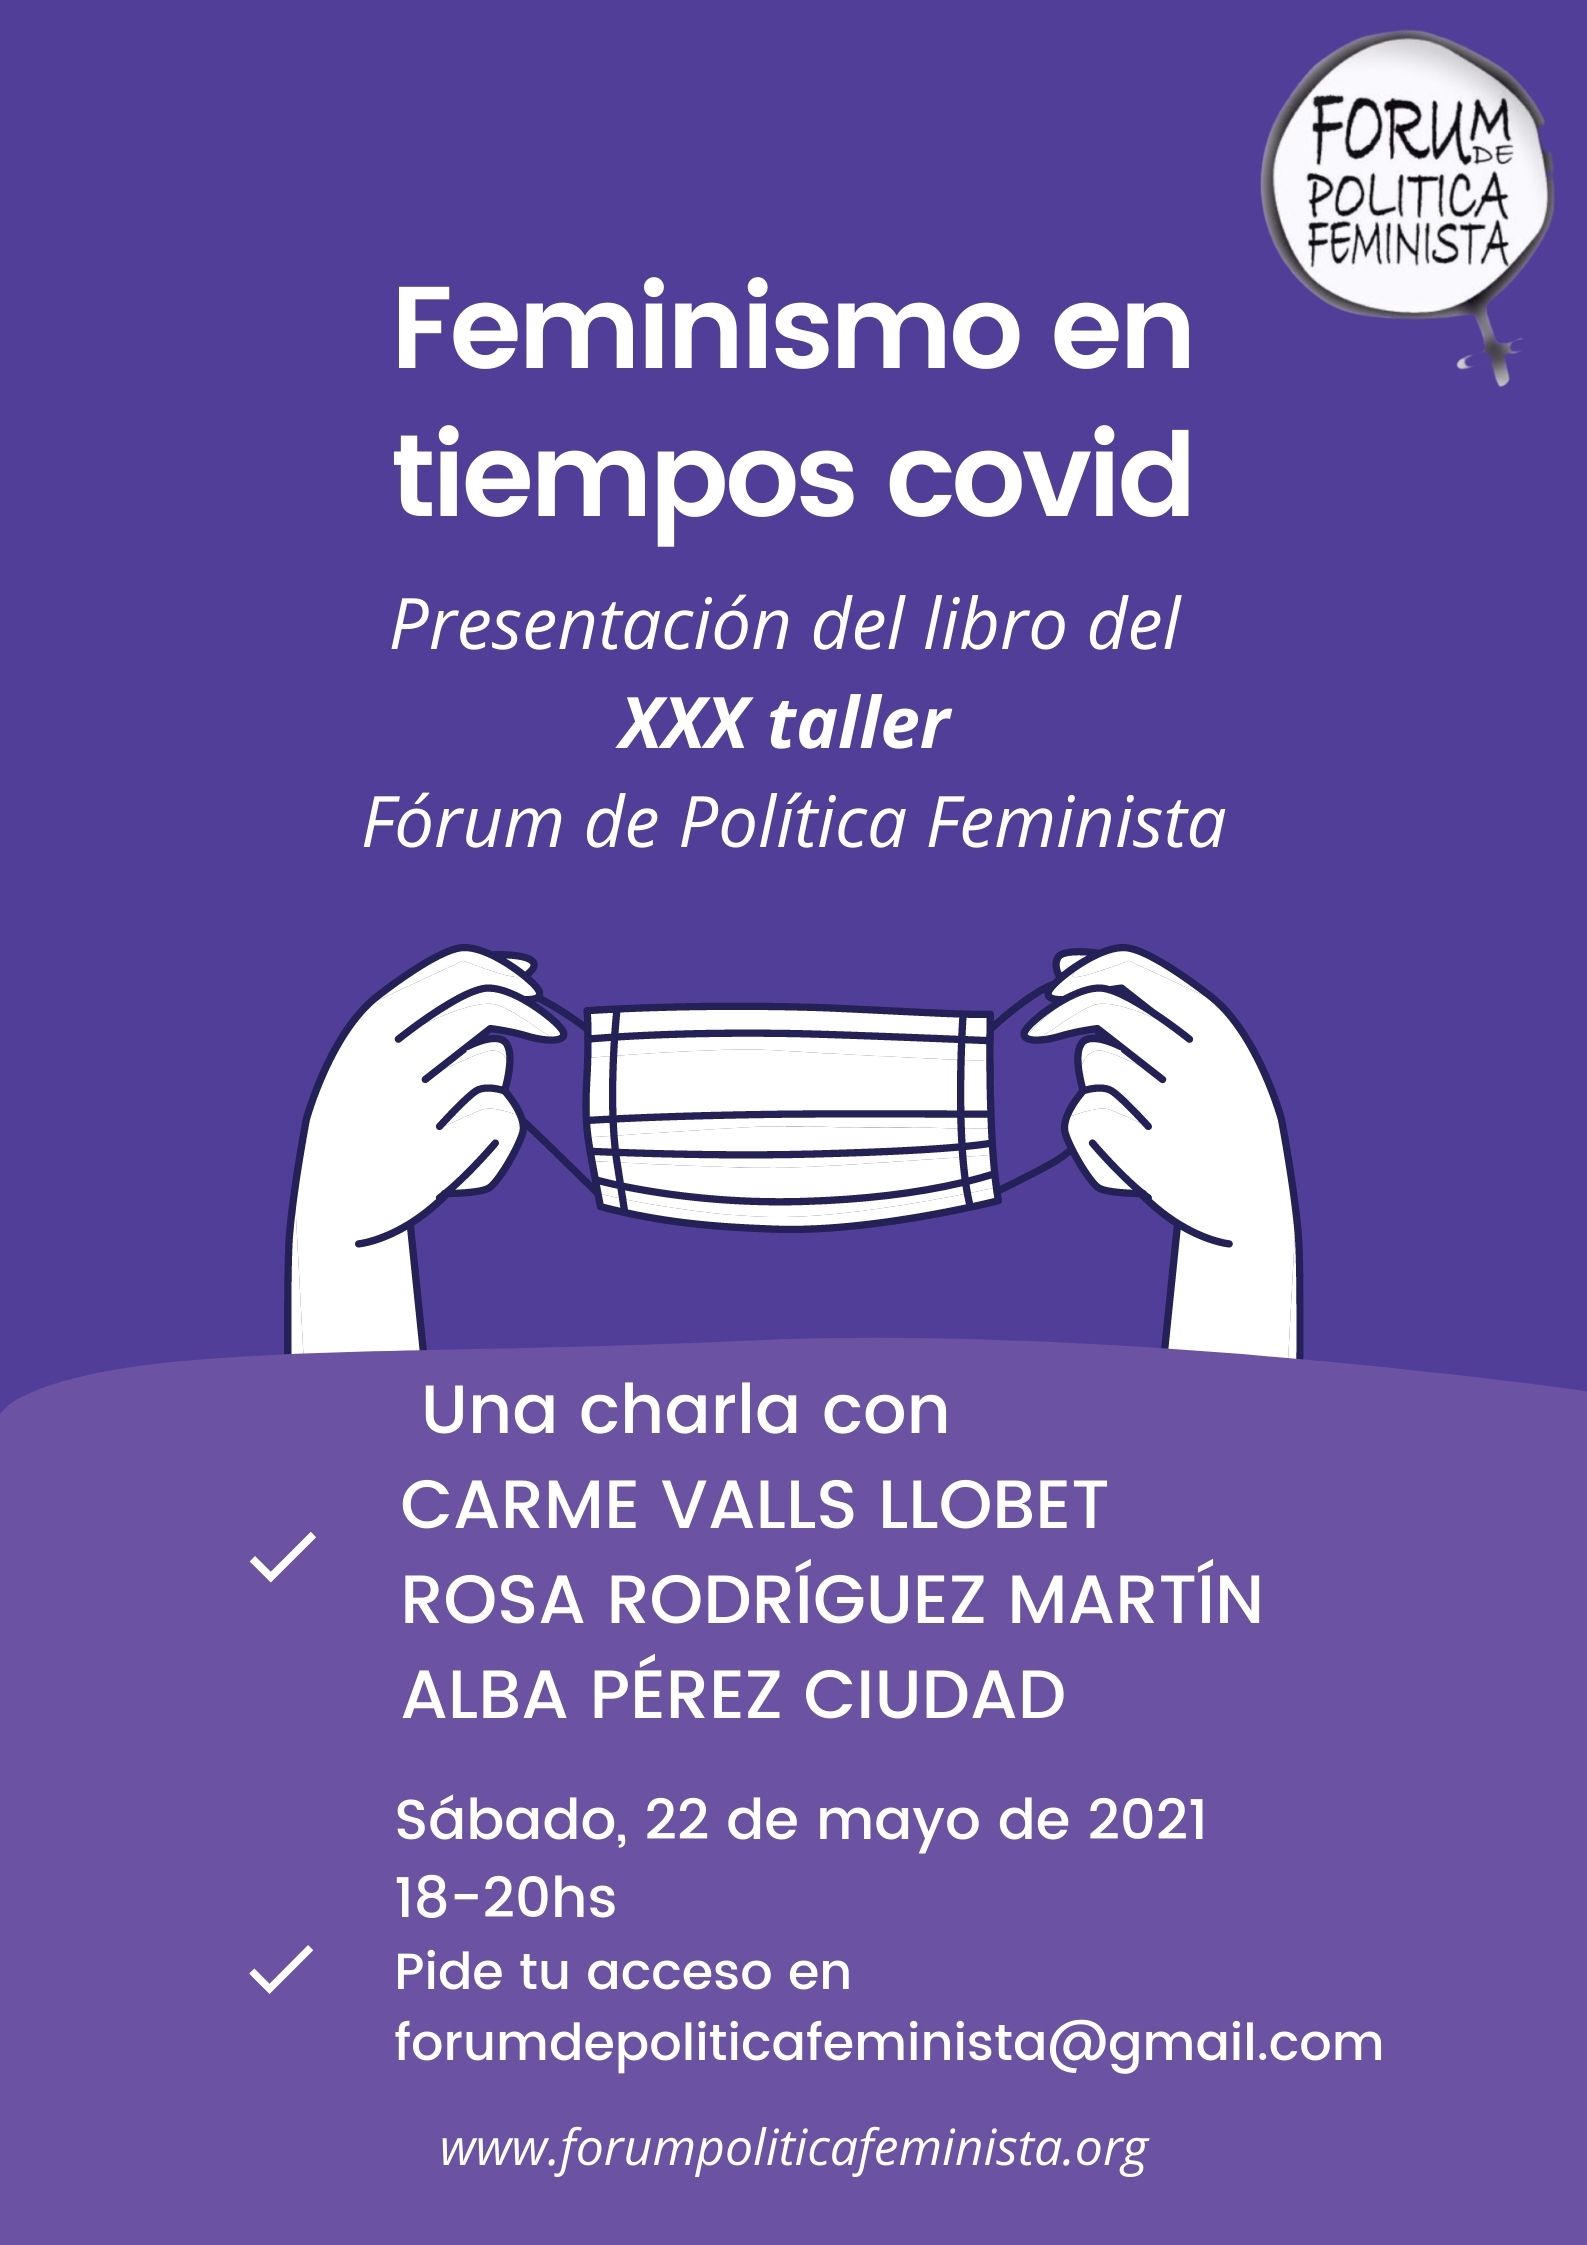 XXX TALLER DEL FORUM DE POLITICA FEMINISTA. FEMINISMO EN TIEMPOS DE COVID-19